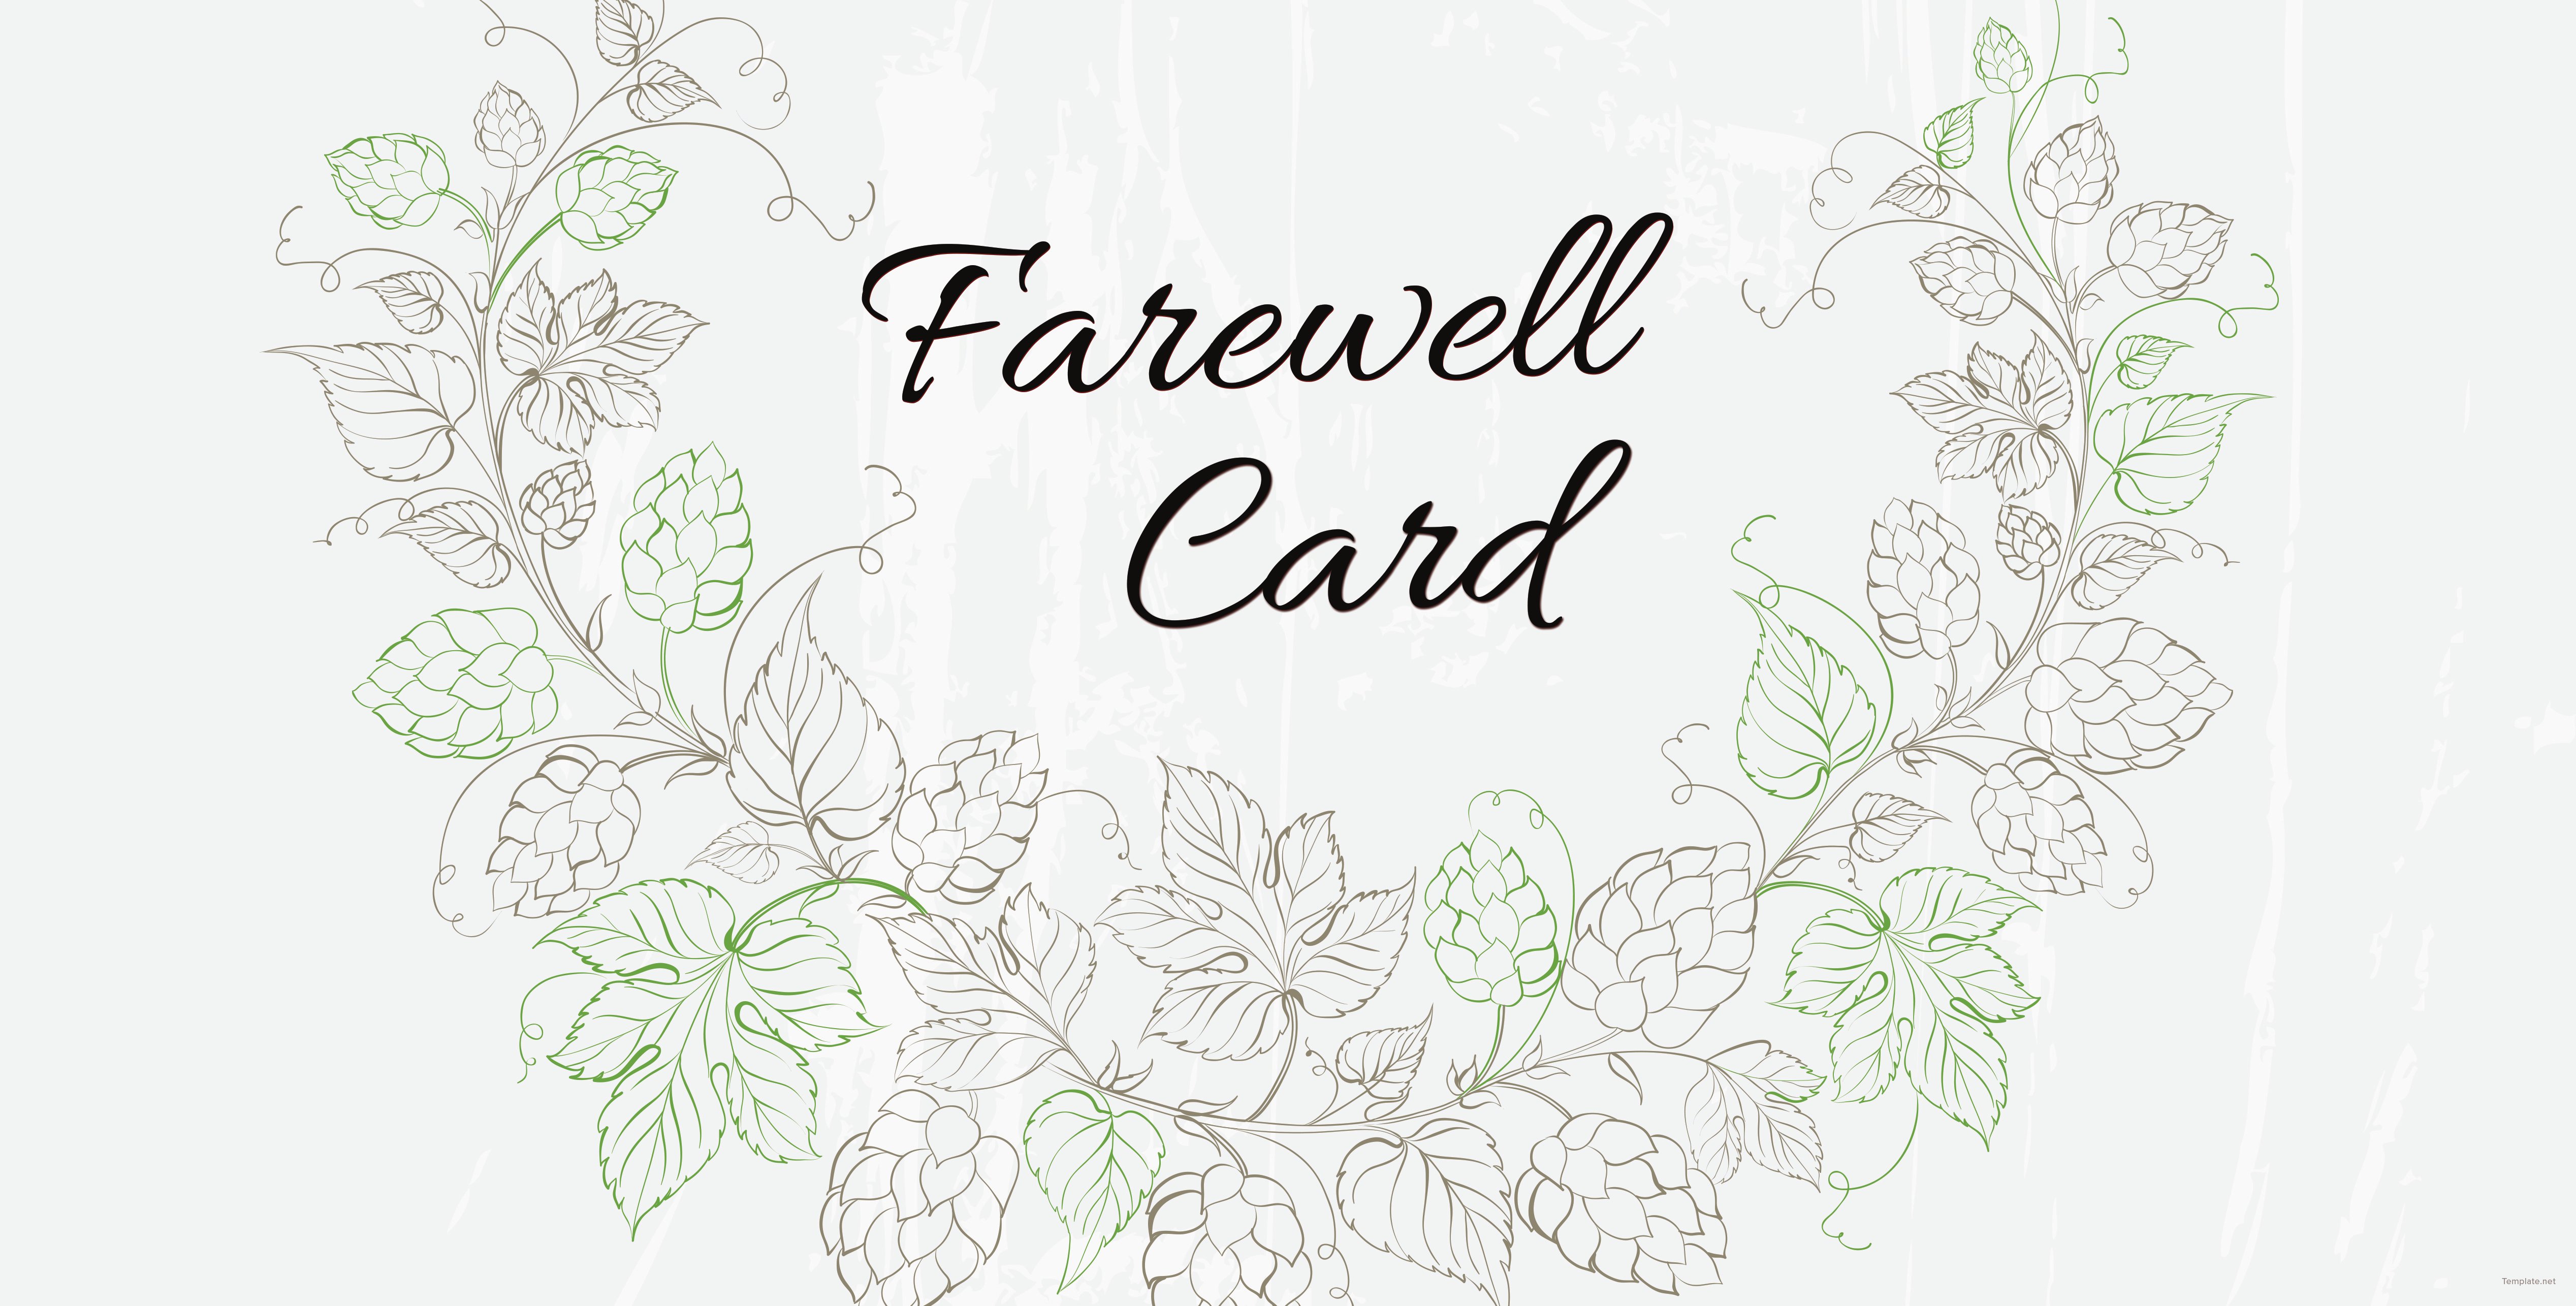 Free Farewell Invitation Card Template in Adobe Illustrator